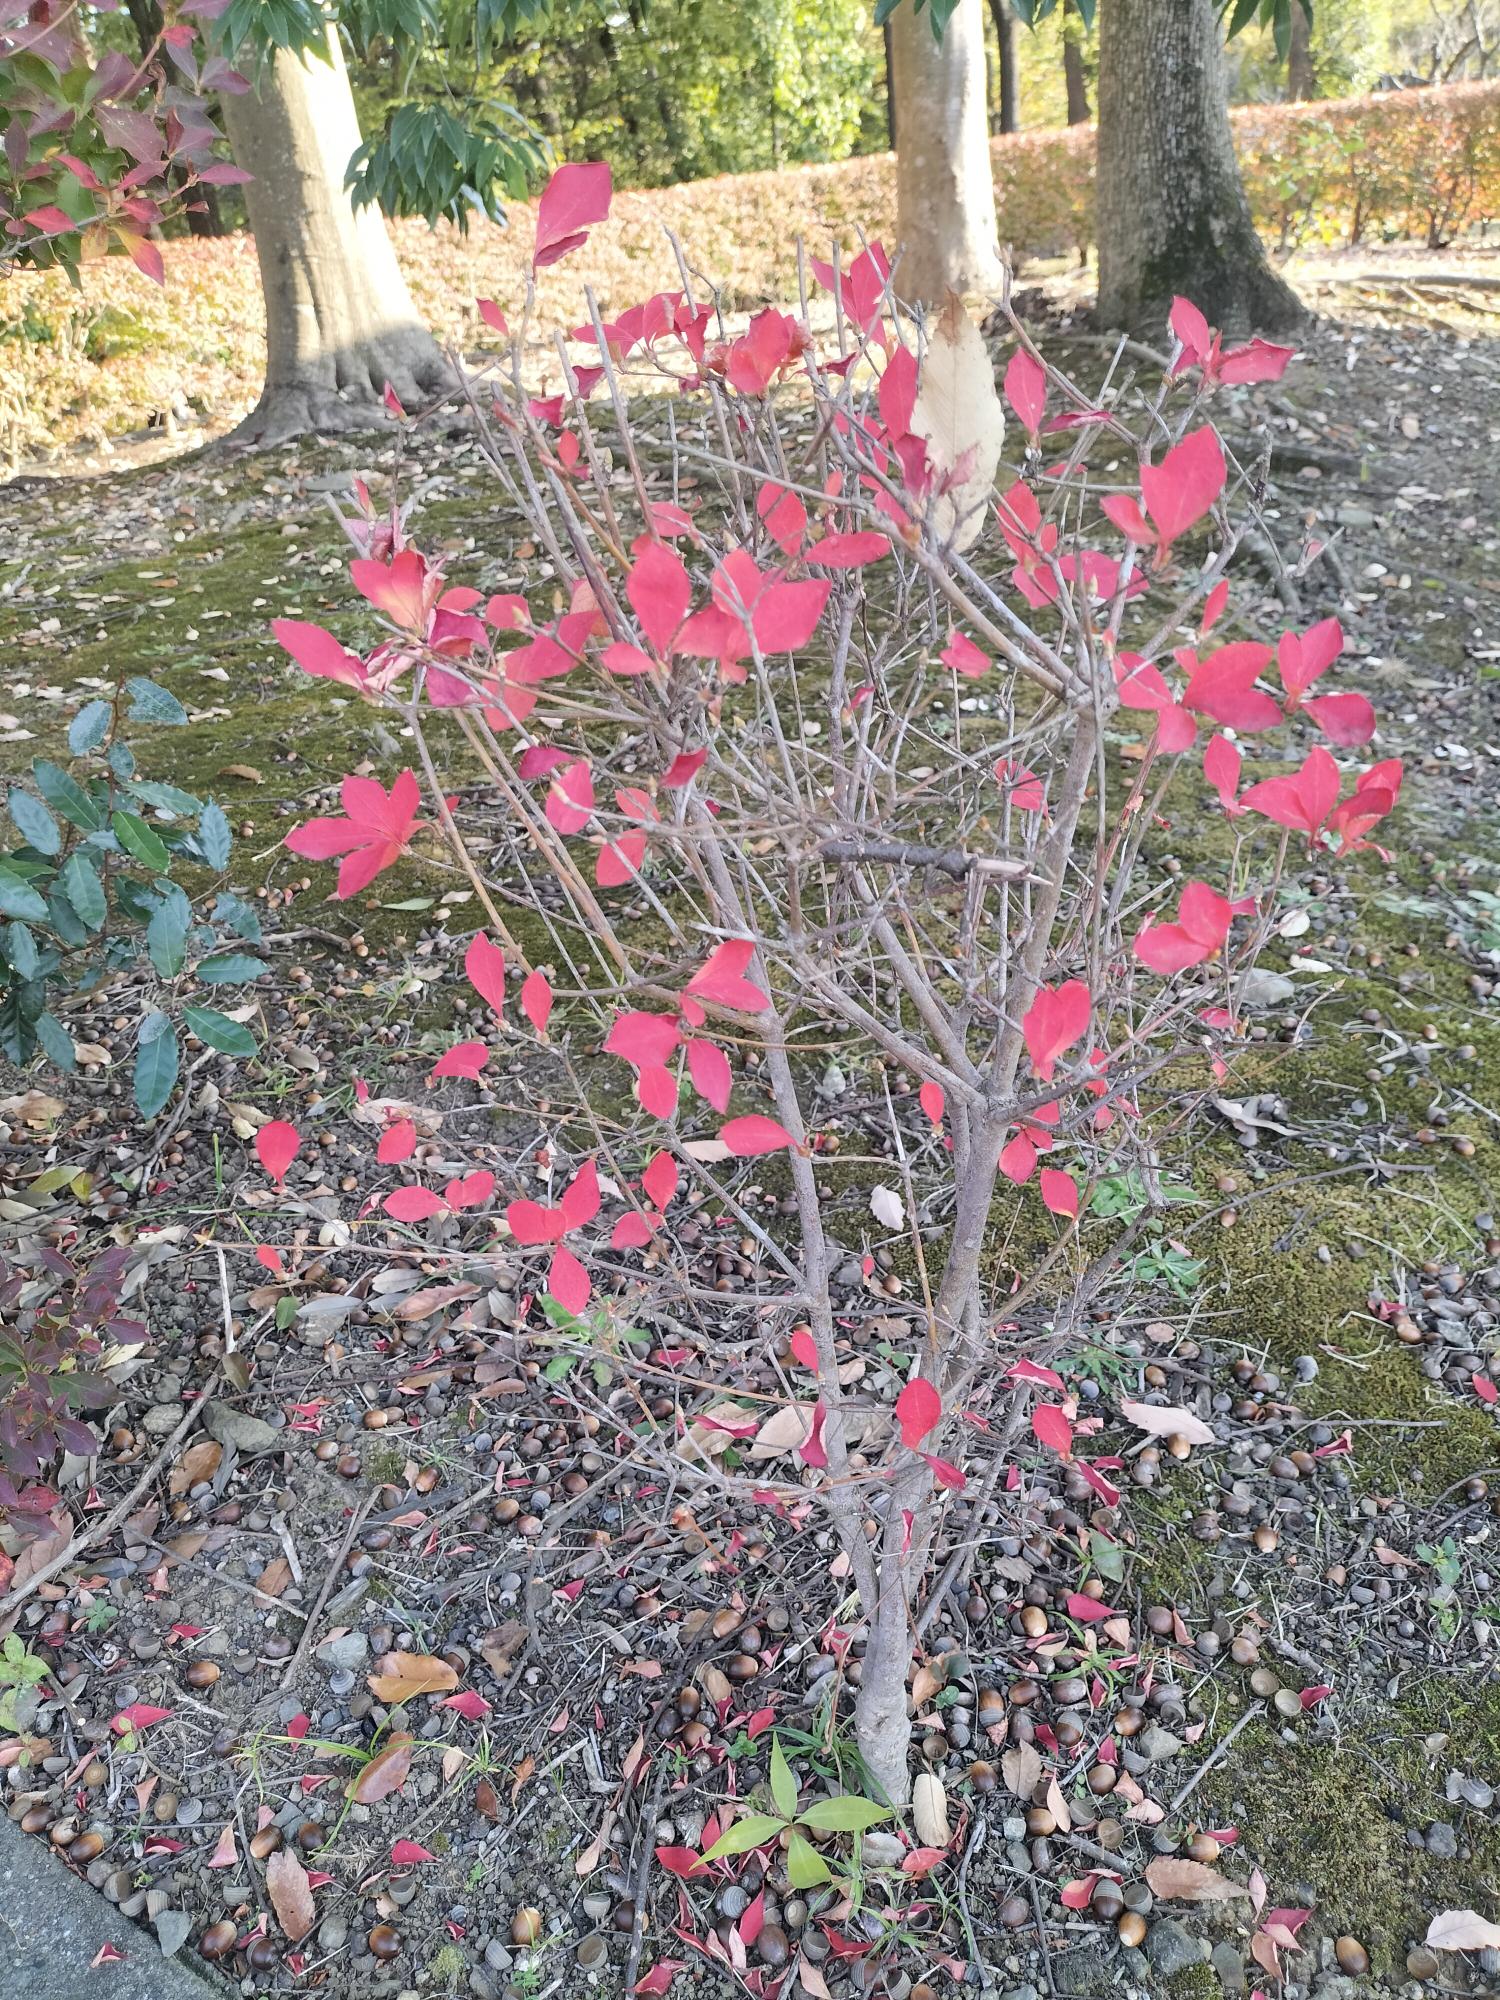 若宮公園で撮影された紅葉した低木の下に、どんぐりがたくさん落ちている